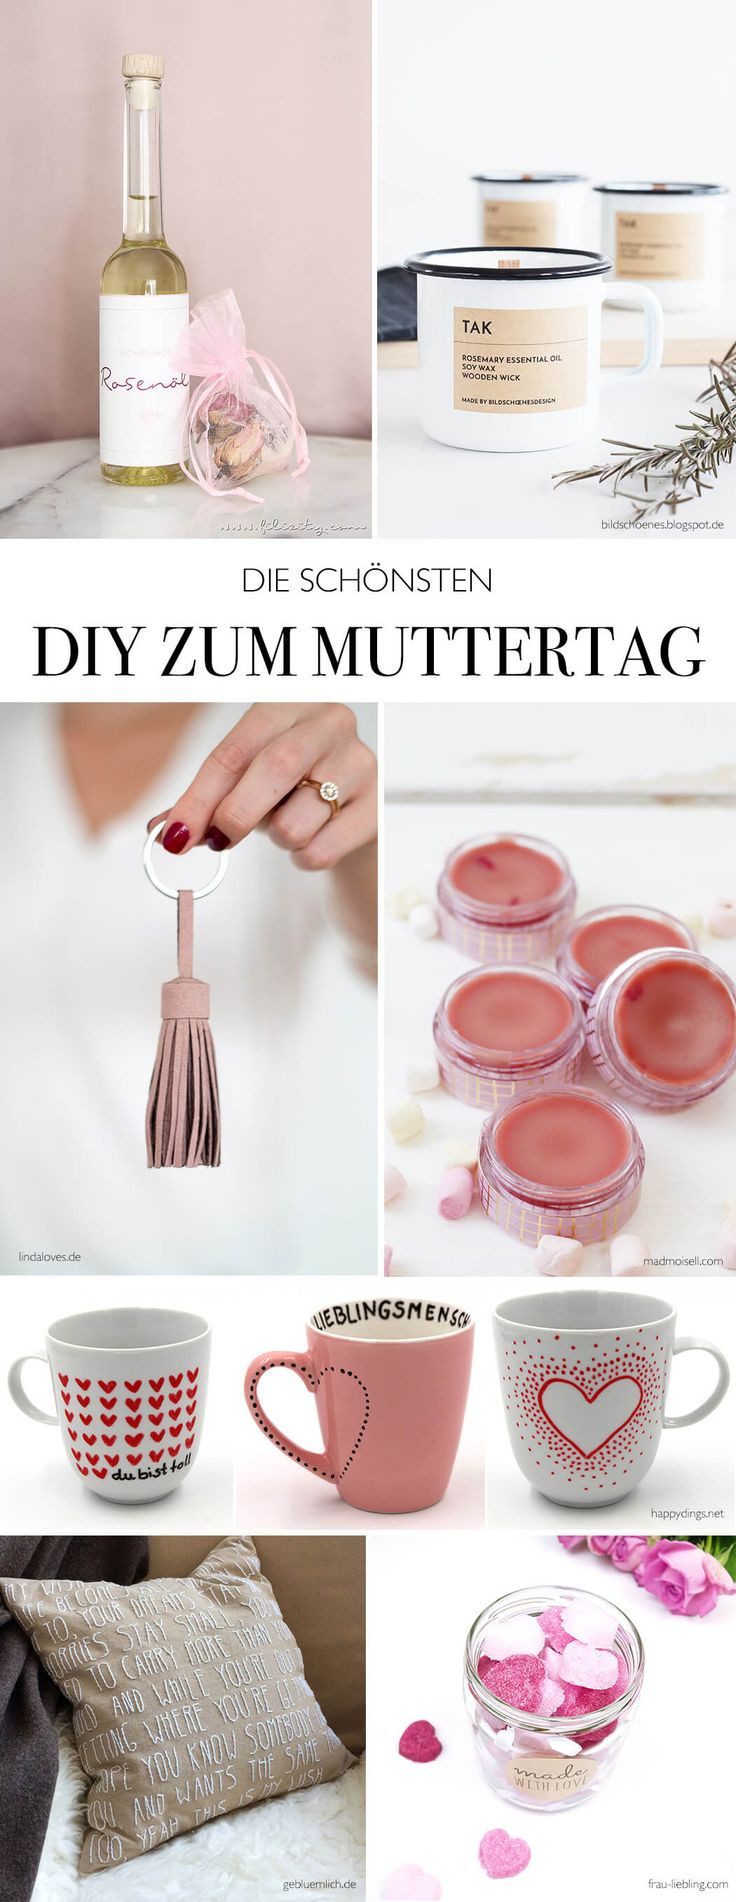 Ideen Geschenke
 25 best ideas about Basteln Zum Muttertag auf Pinterest